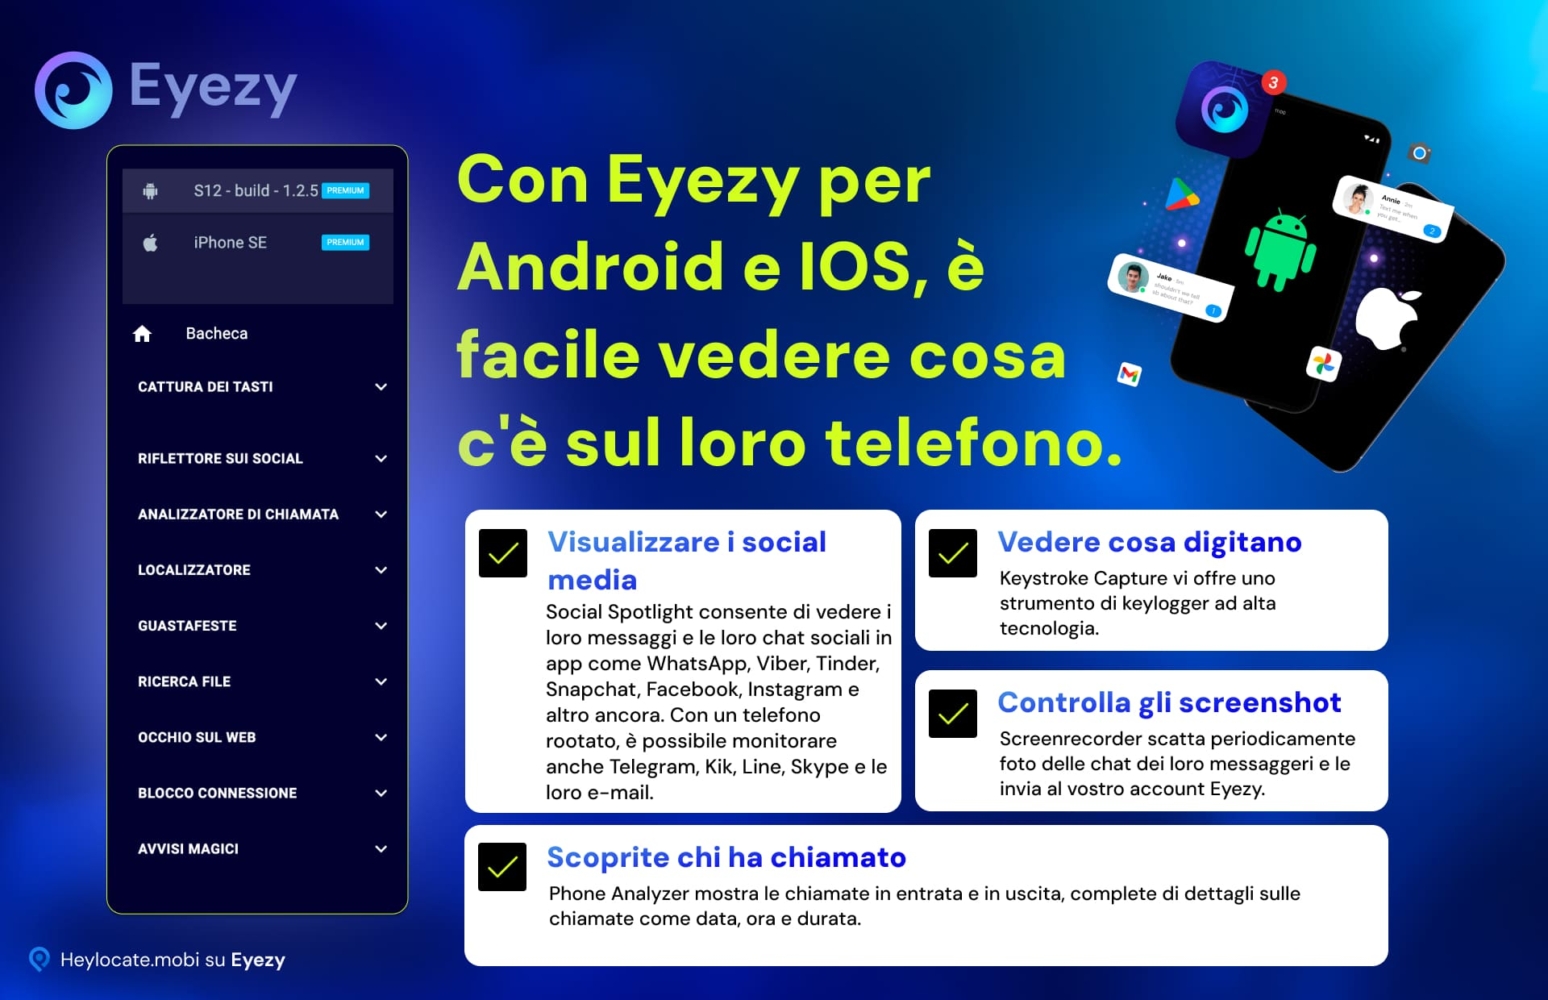 Collage che evidenzia le funzioni di monitoraggio di Eyezy per i dispositivi Android e iOS, tra cui la visualizzazione dei social media, la cattura dei tasti, il controllo degli screenshot e l'analisi delle chiamate.